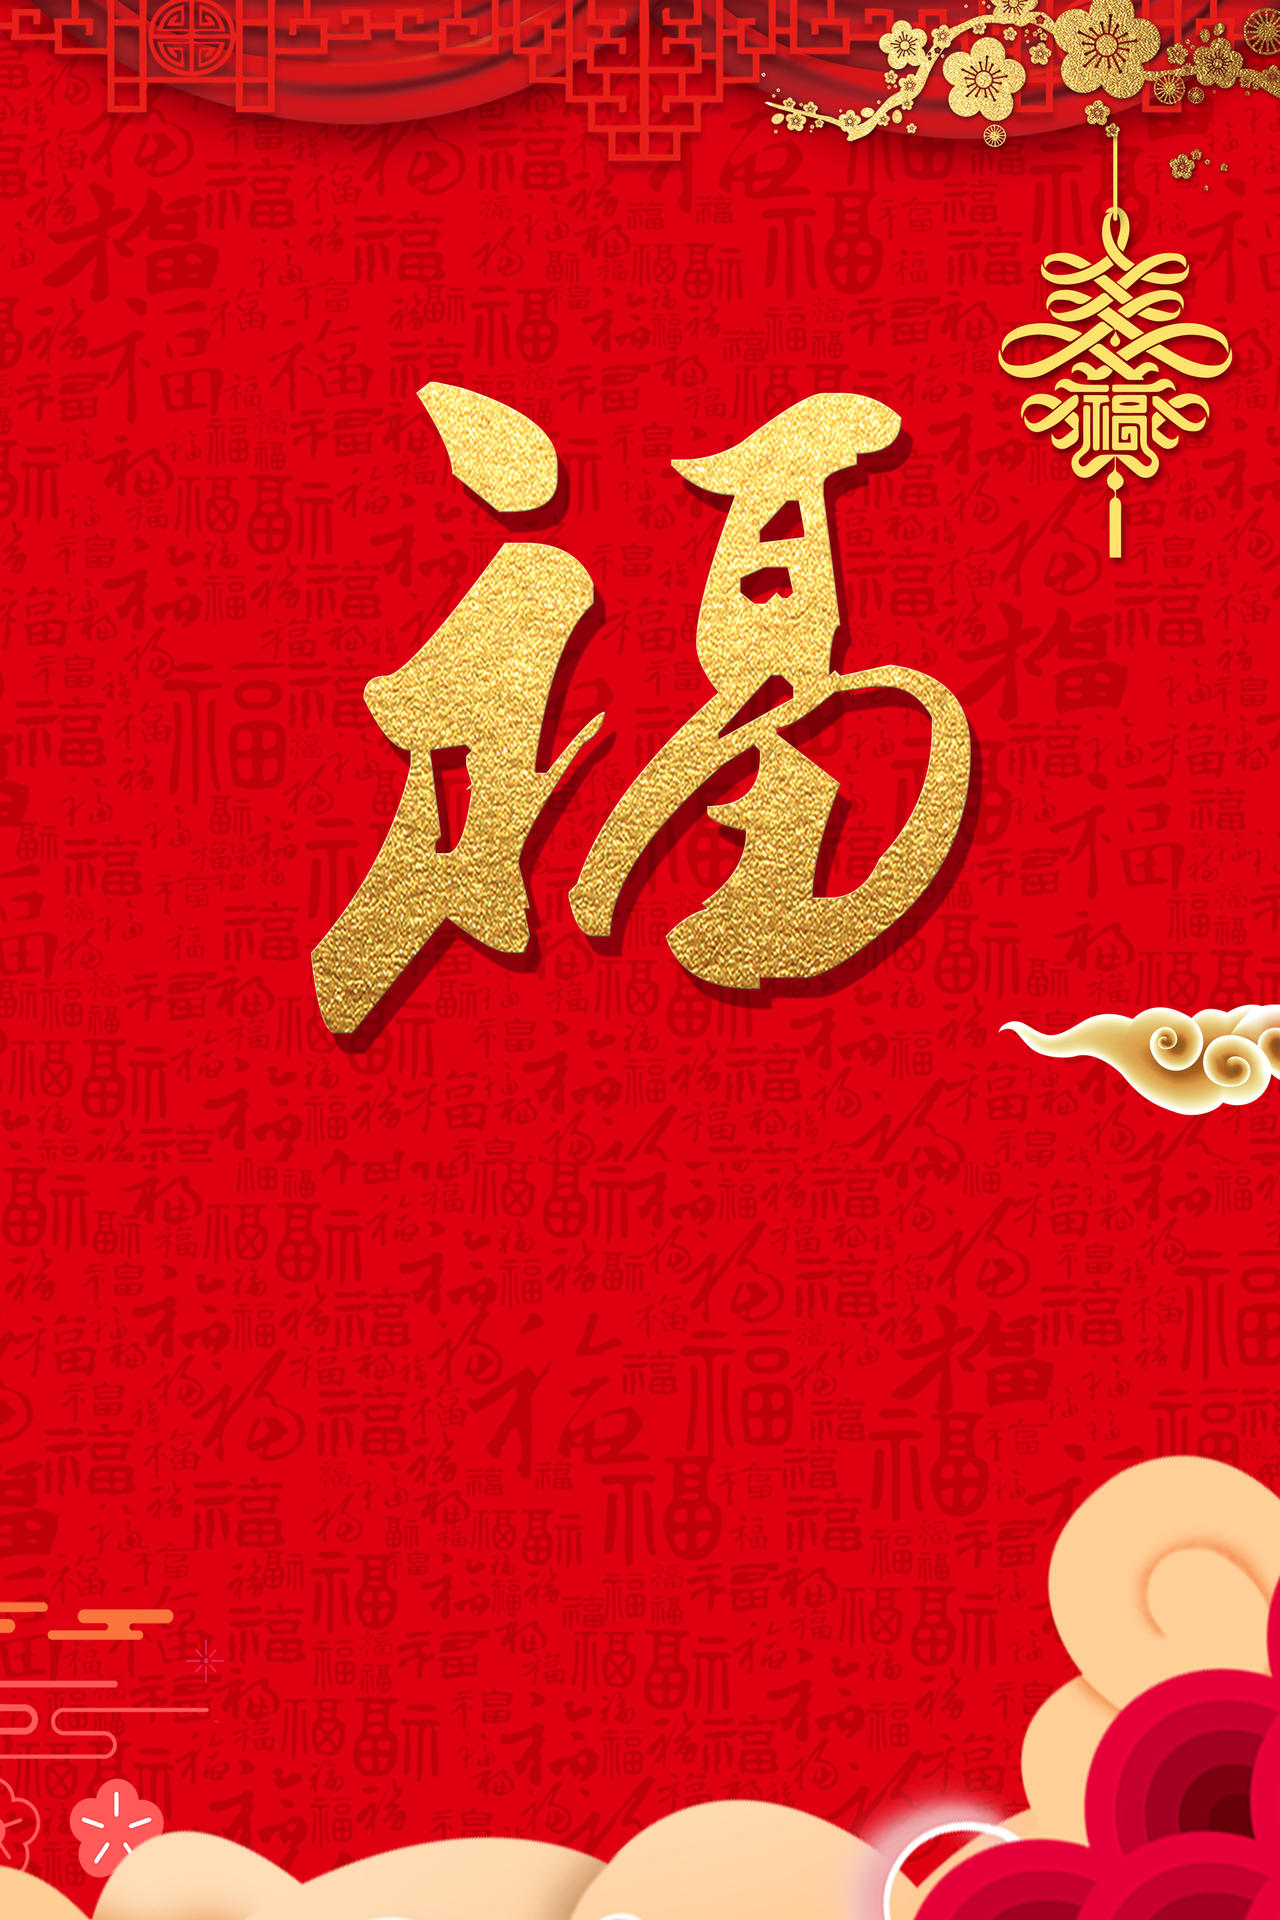 
福字暗纹挂坠2019猪年新年过年红色背景海报